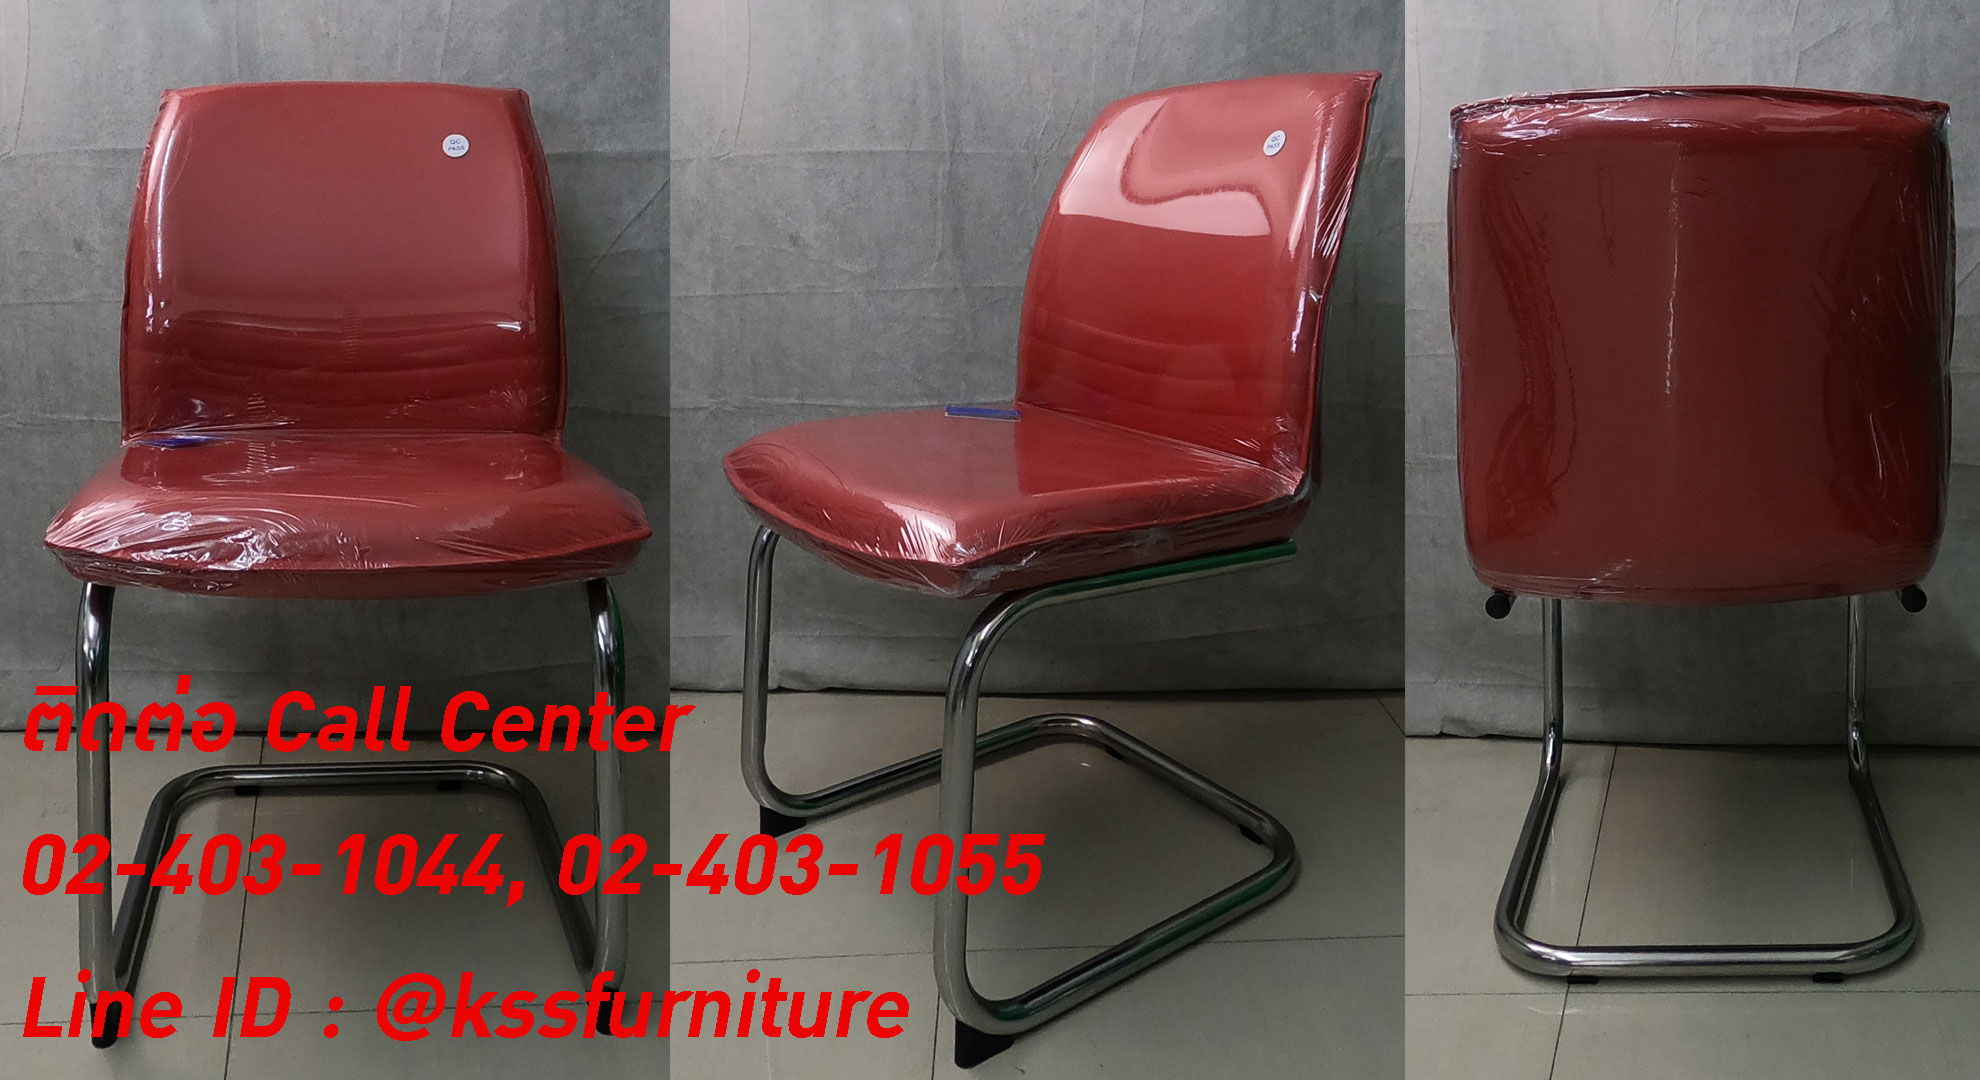 03028::NS-6::เก้าอี้รับแขก โครงขาชุบโครเมี่ยมตัวซี มีเบาะหนัง PVC,PU,และเบาะผ้าฝ้าย เก้าอี้รับแขก asahi